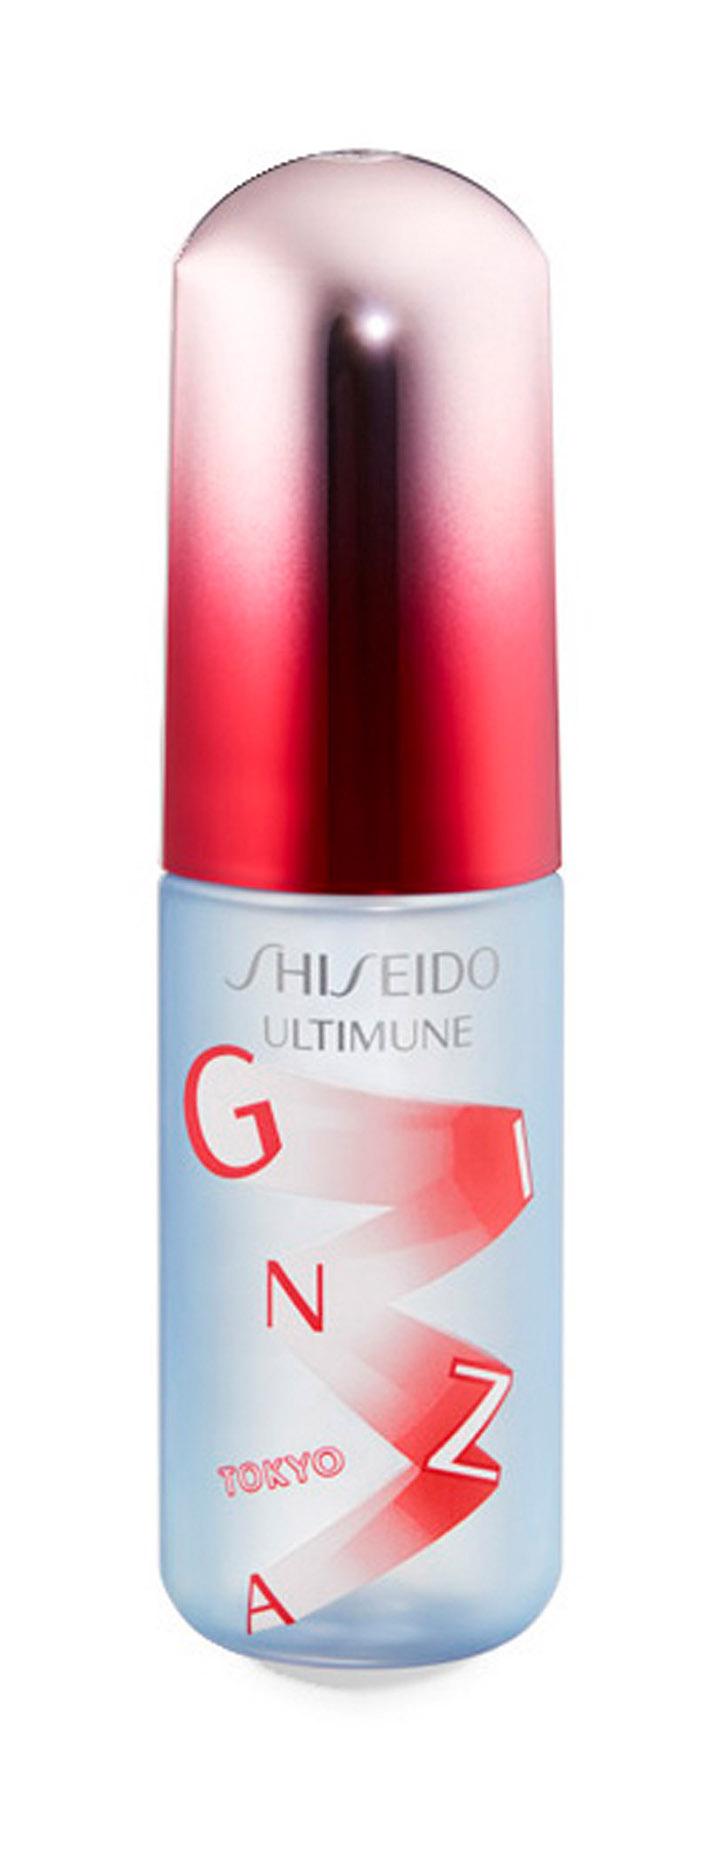 Освежающий мист для лица Shiseido Ultimune Defense Refresh Mist Duo защитный, 60 мл beardburys увлажняющий спрей для лица hydra refresh facial mist 120 0